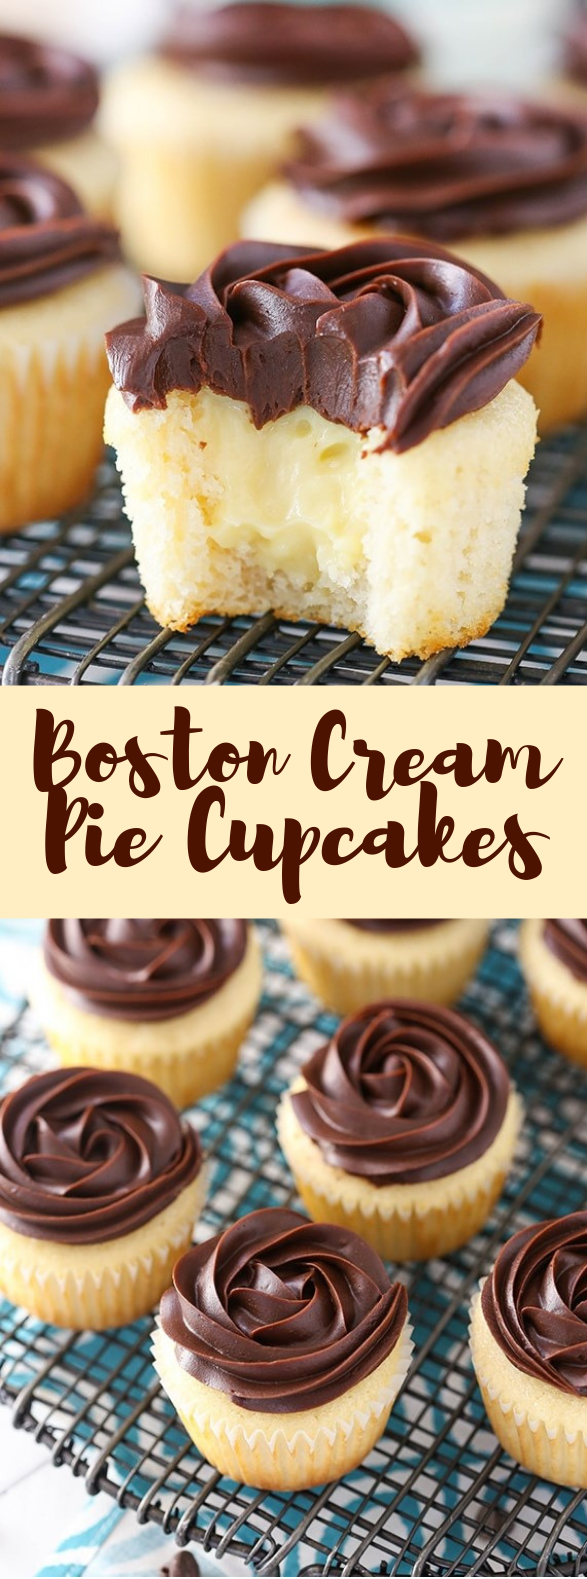 BOSTON CREAM PIE CUPCAKES #dessert #cakes